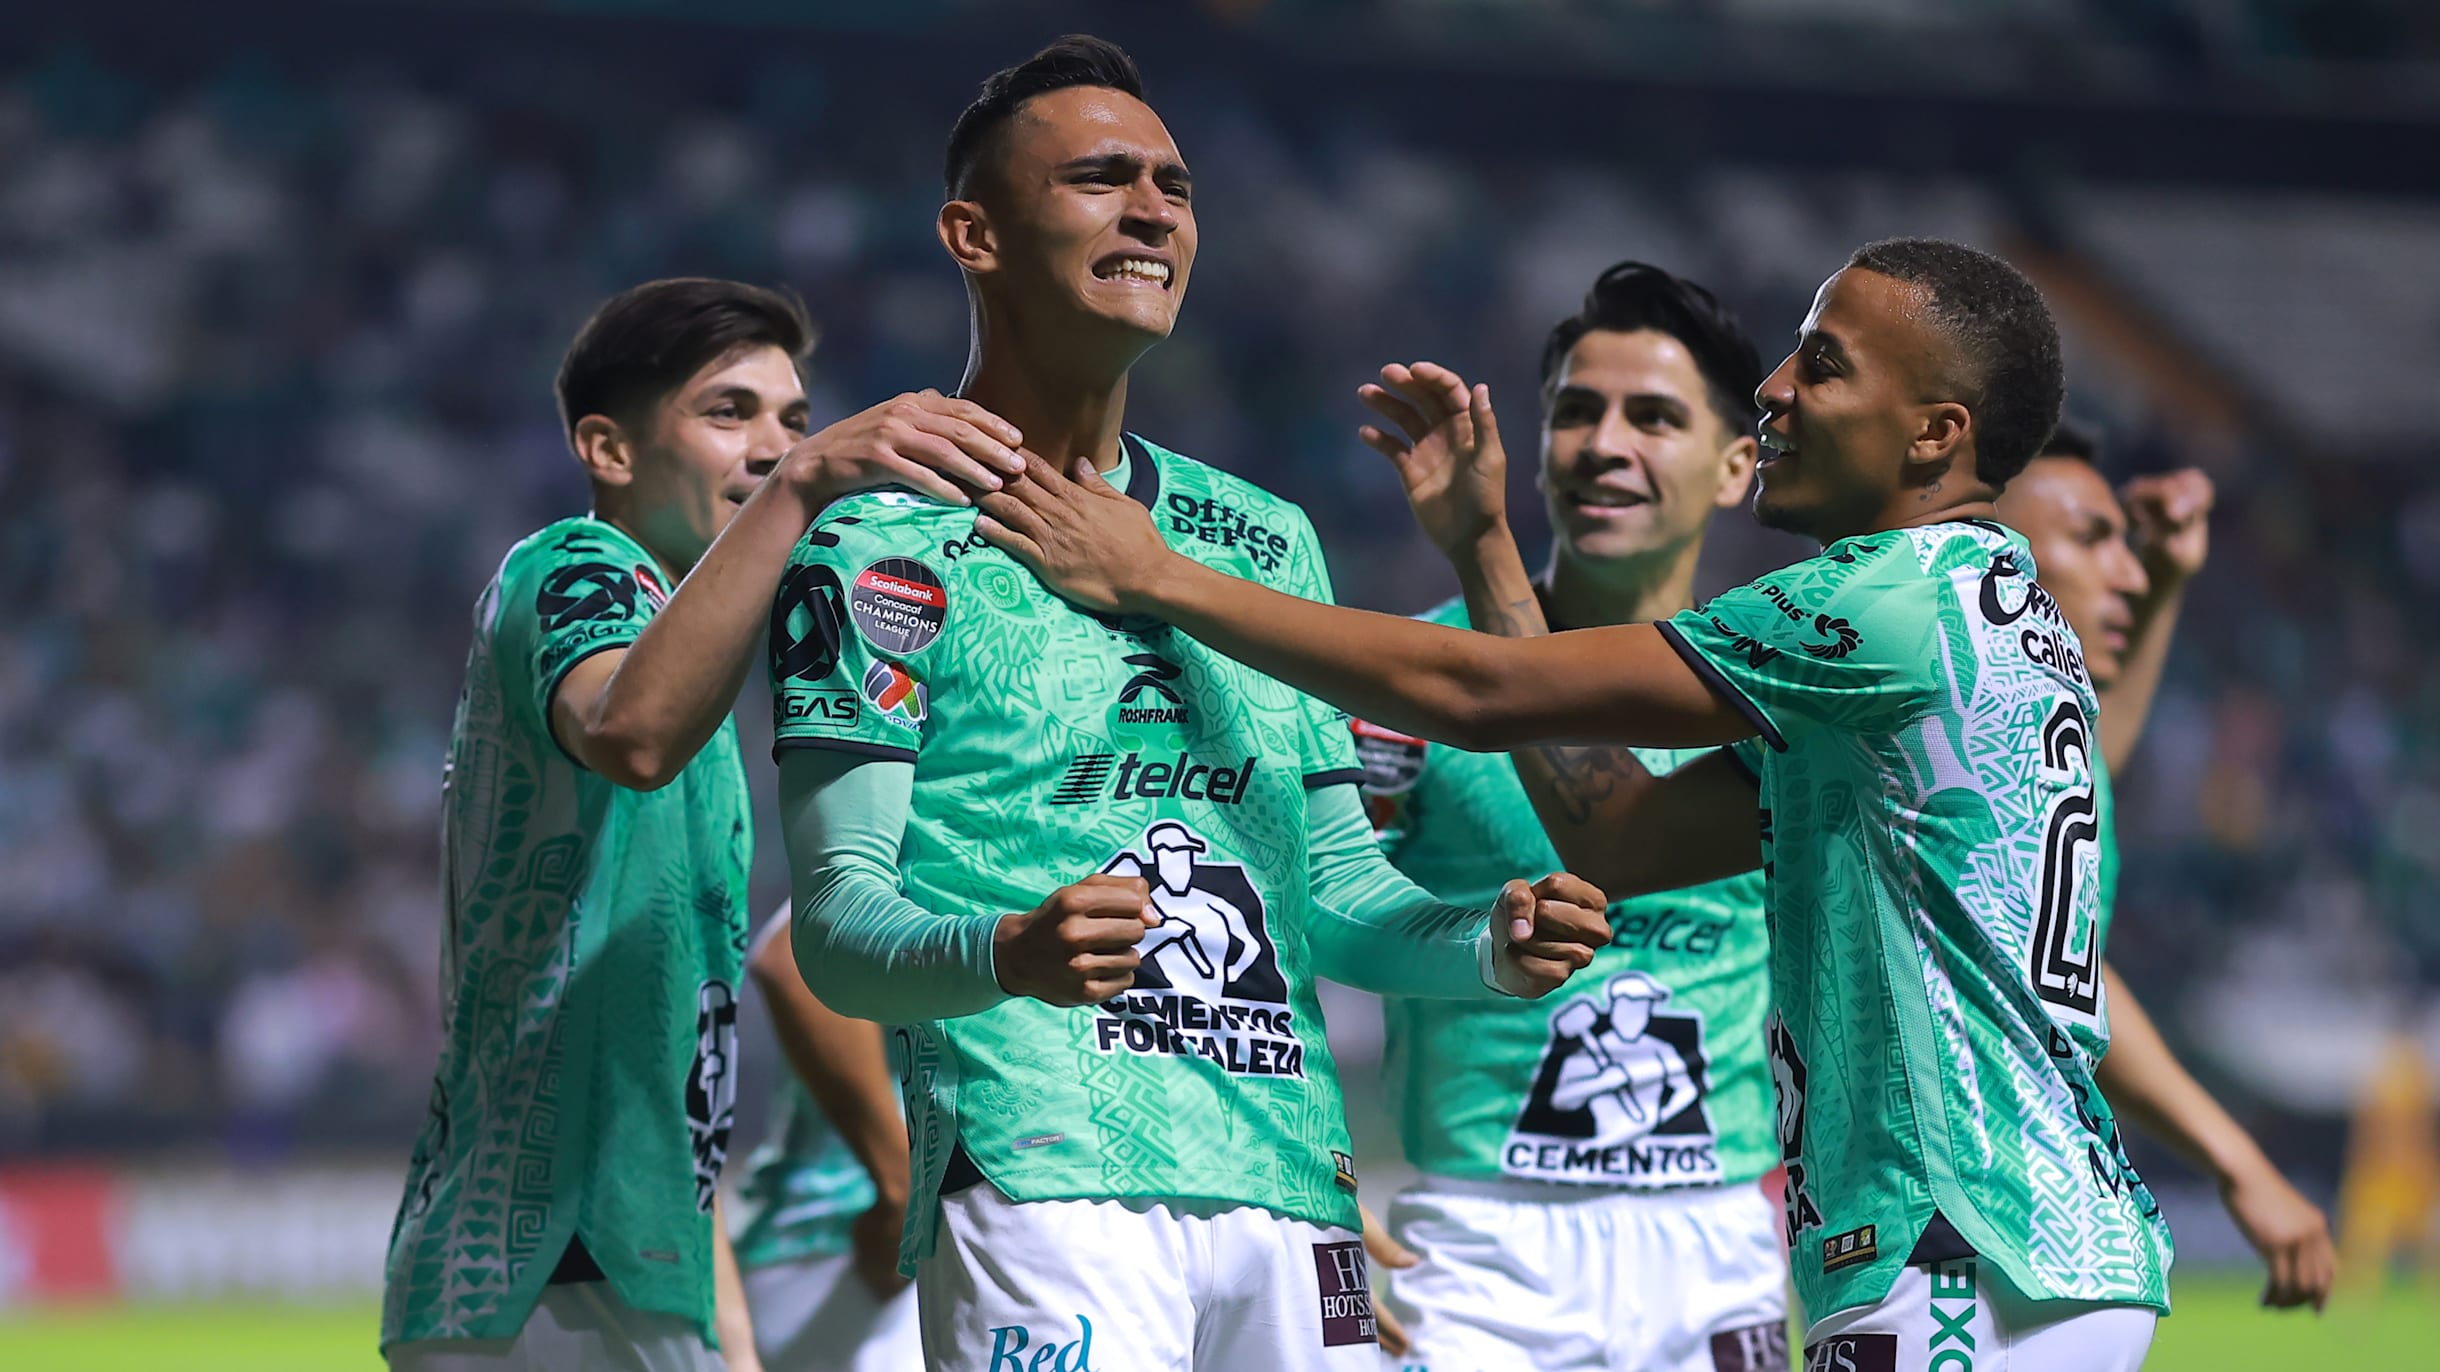 Mundial de Clubes 2023: Sin equipos mexicanos por primera vez en